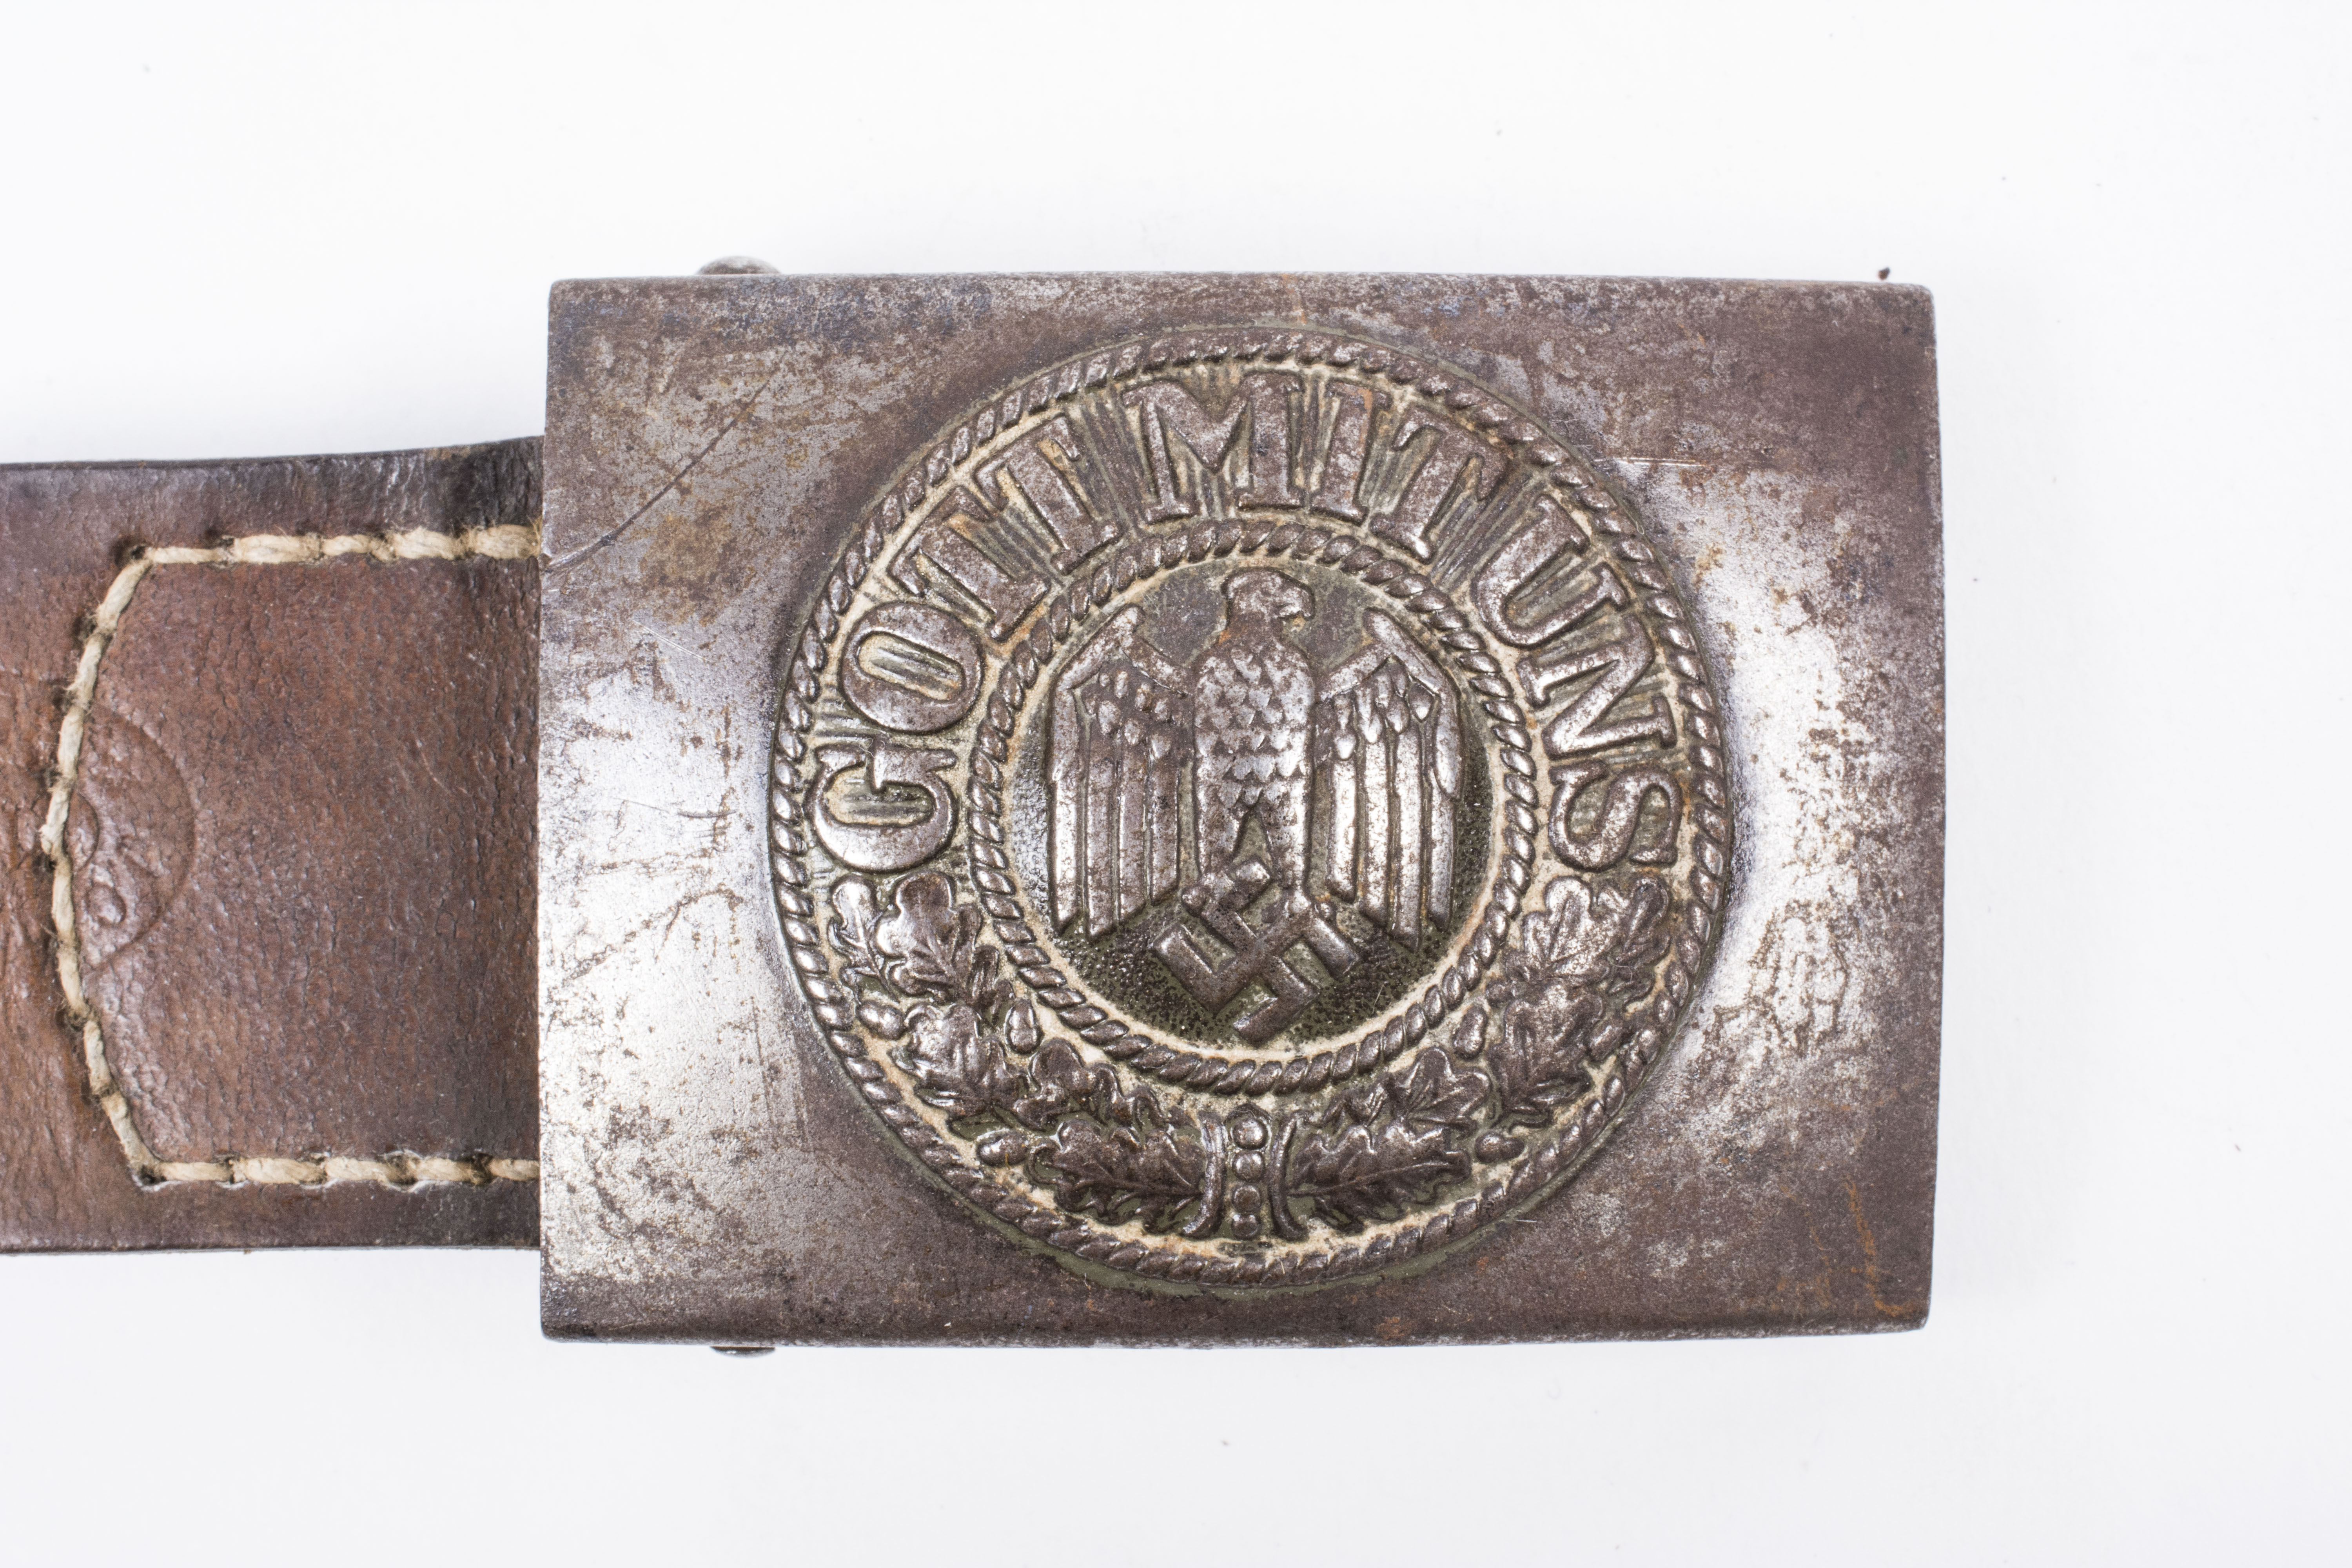 Tabbed steel Heer belt buckle J.C. Maedicke 1941 Berlin – fjm44